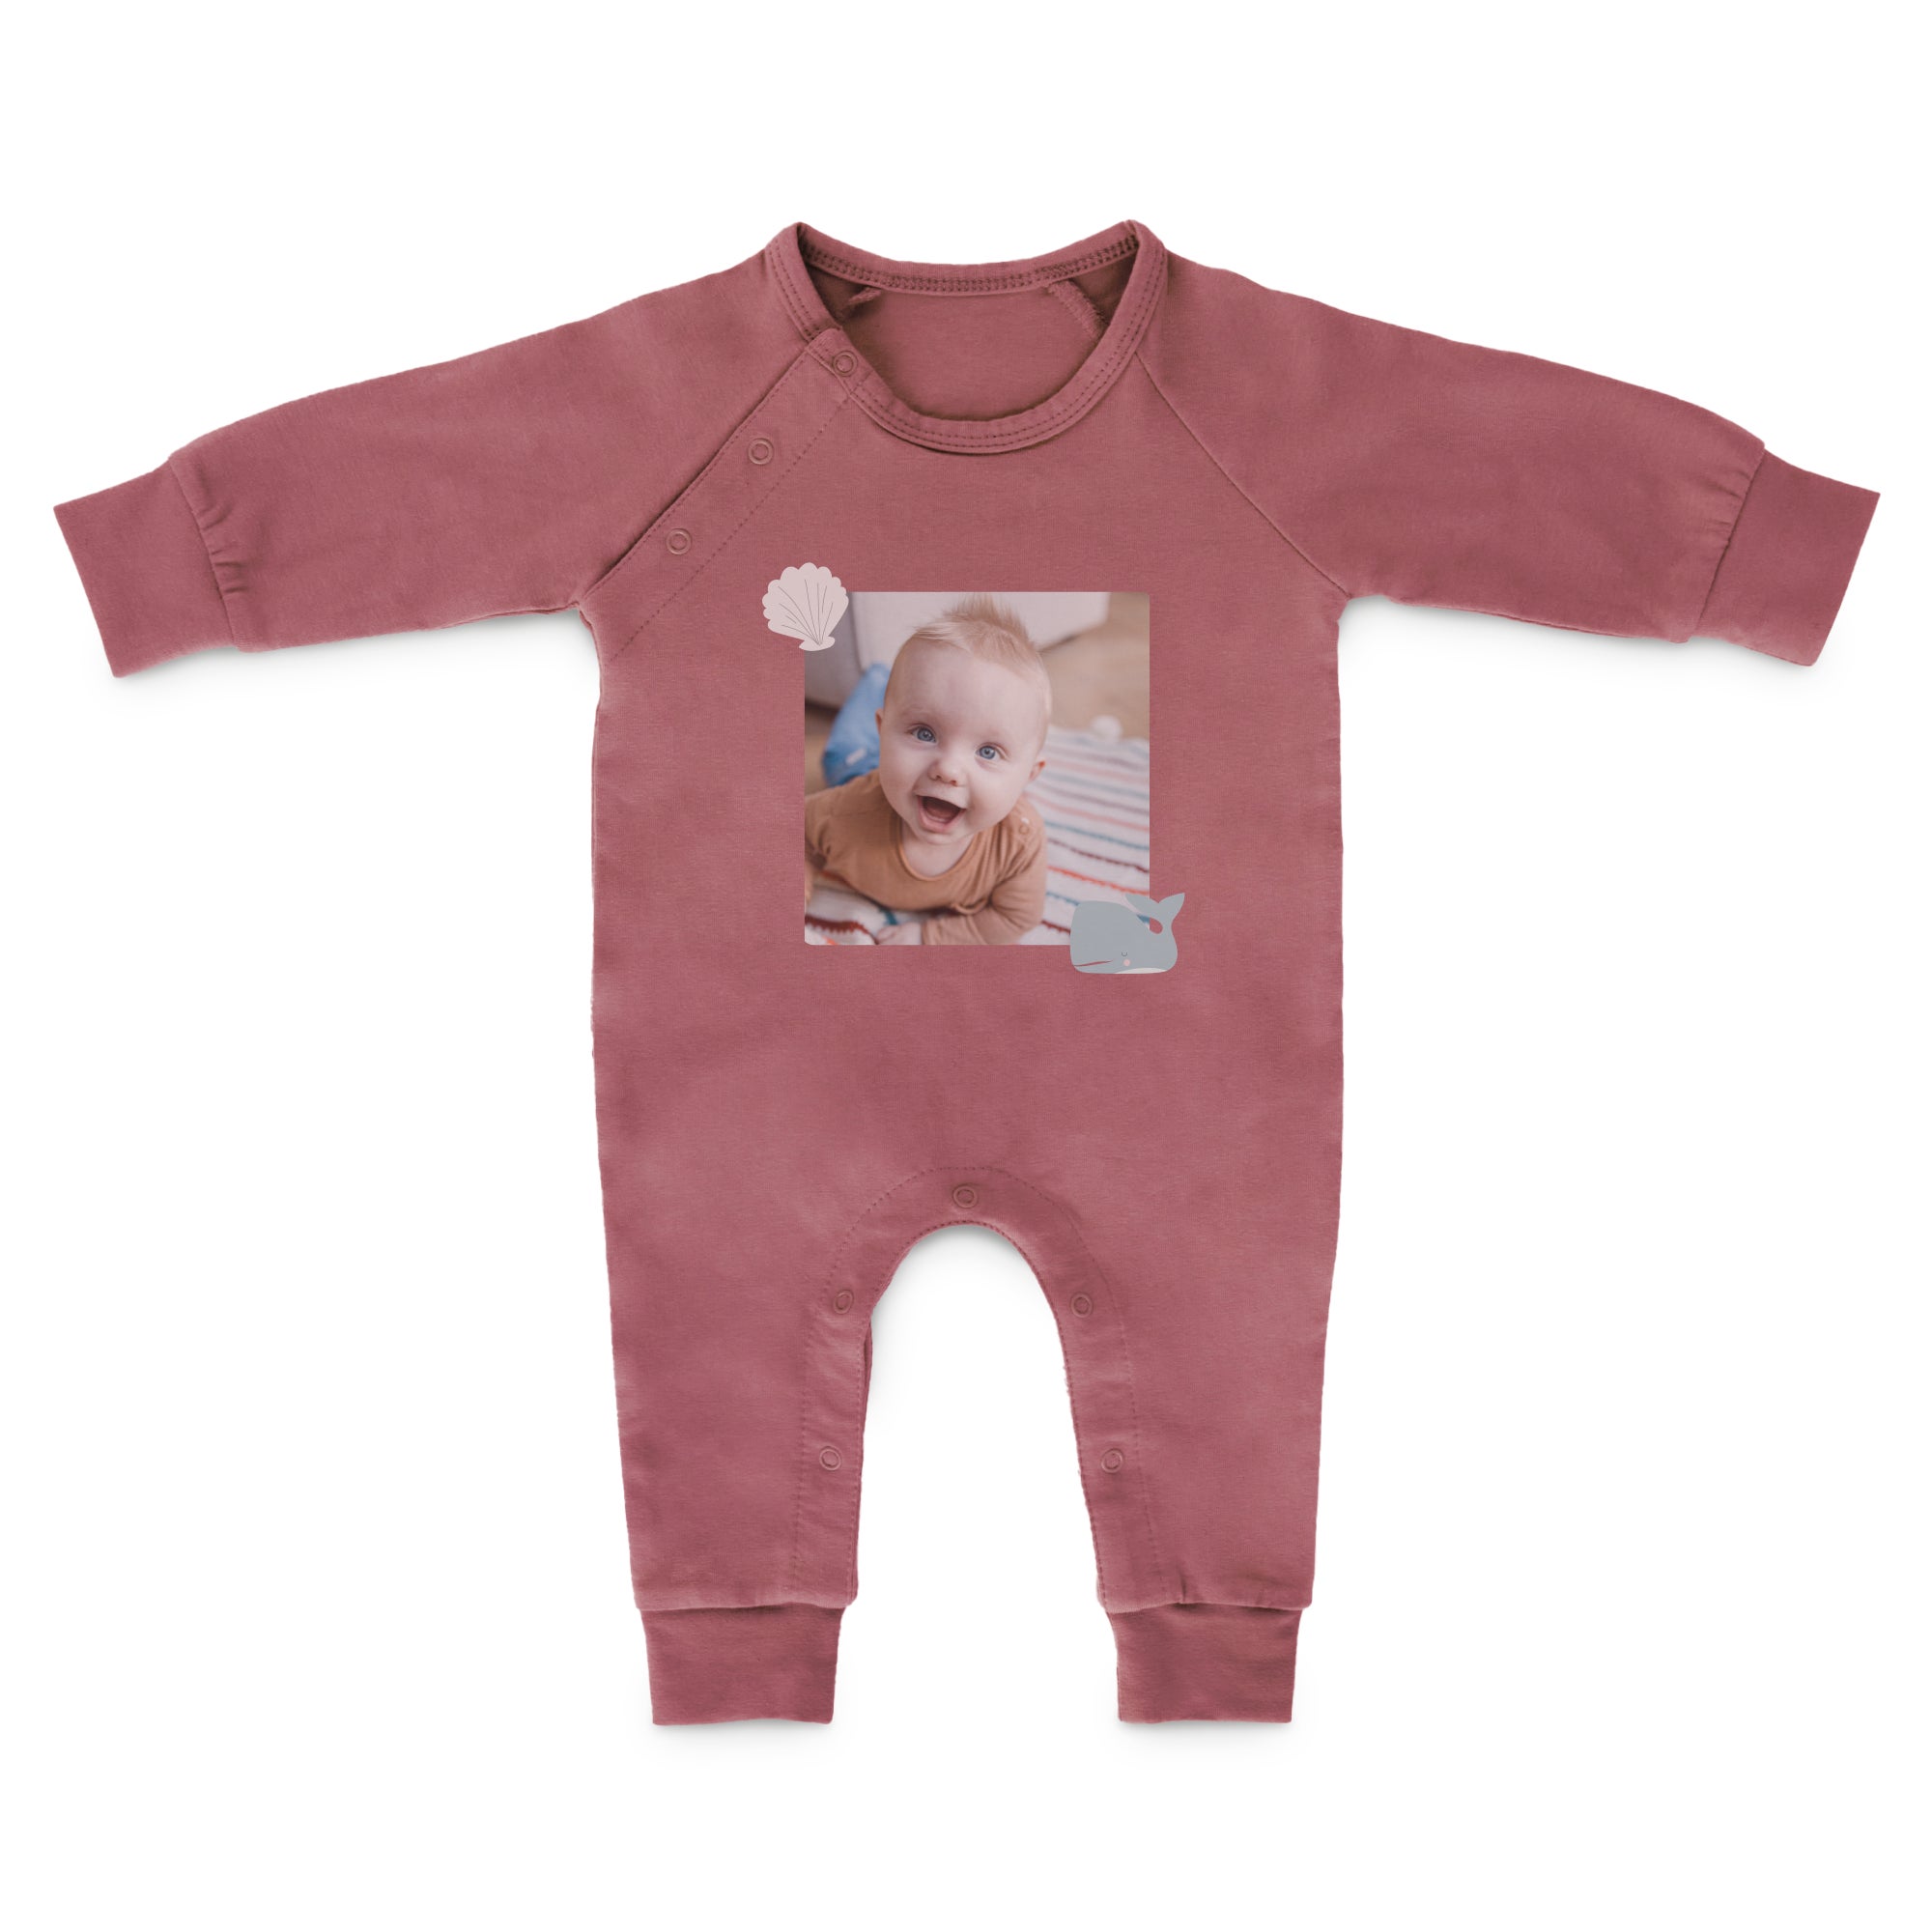 Babystrampler bedrucken Pink 50 56  - Onlineshop YourSurprise